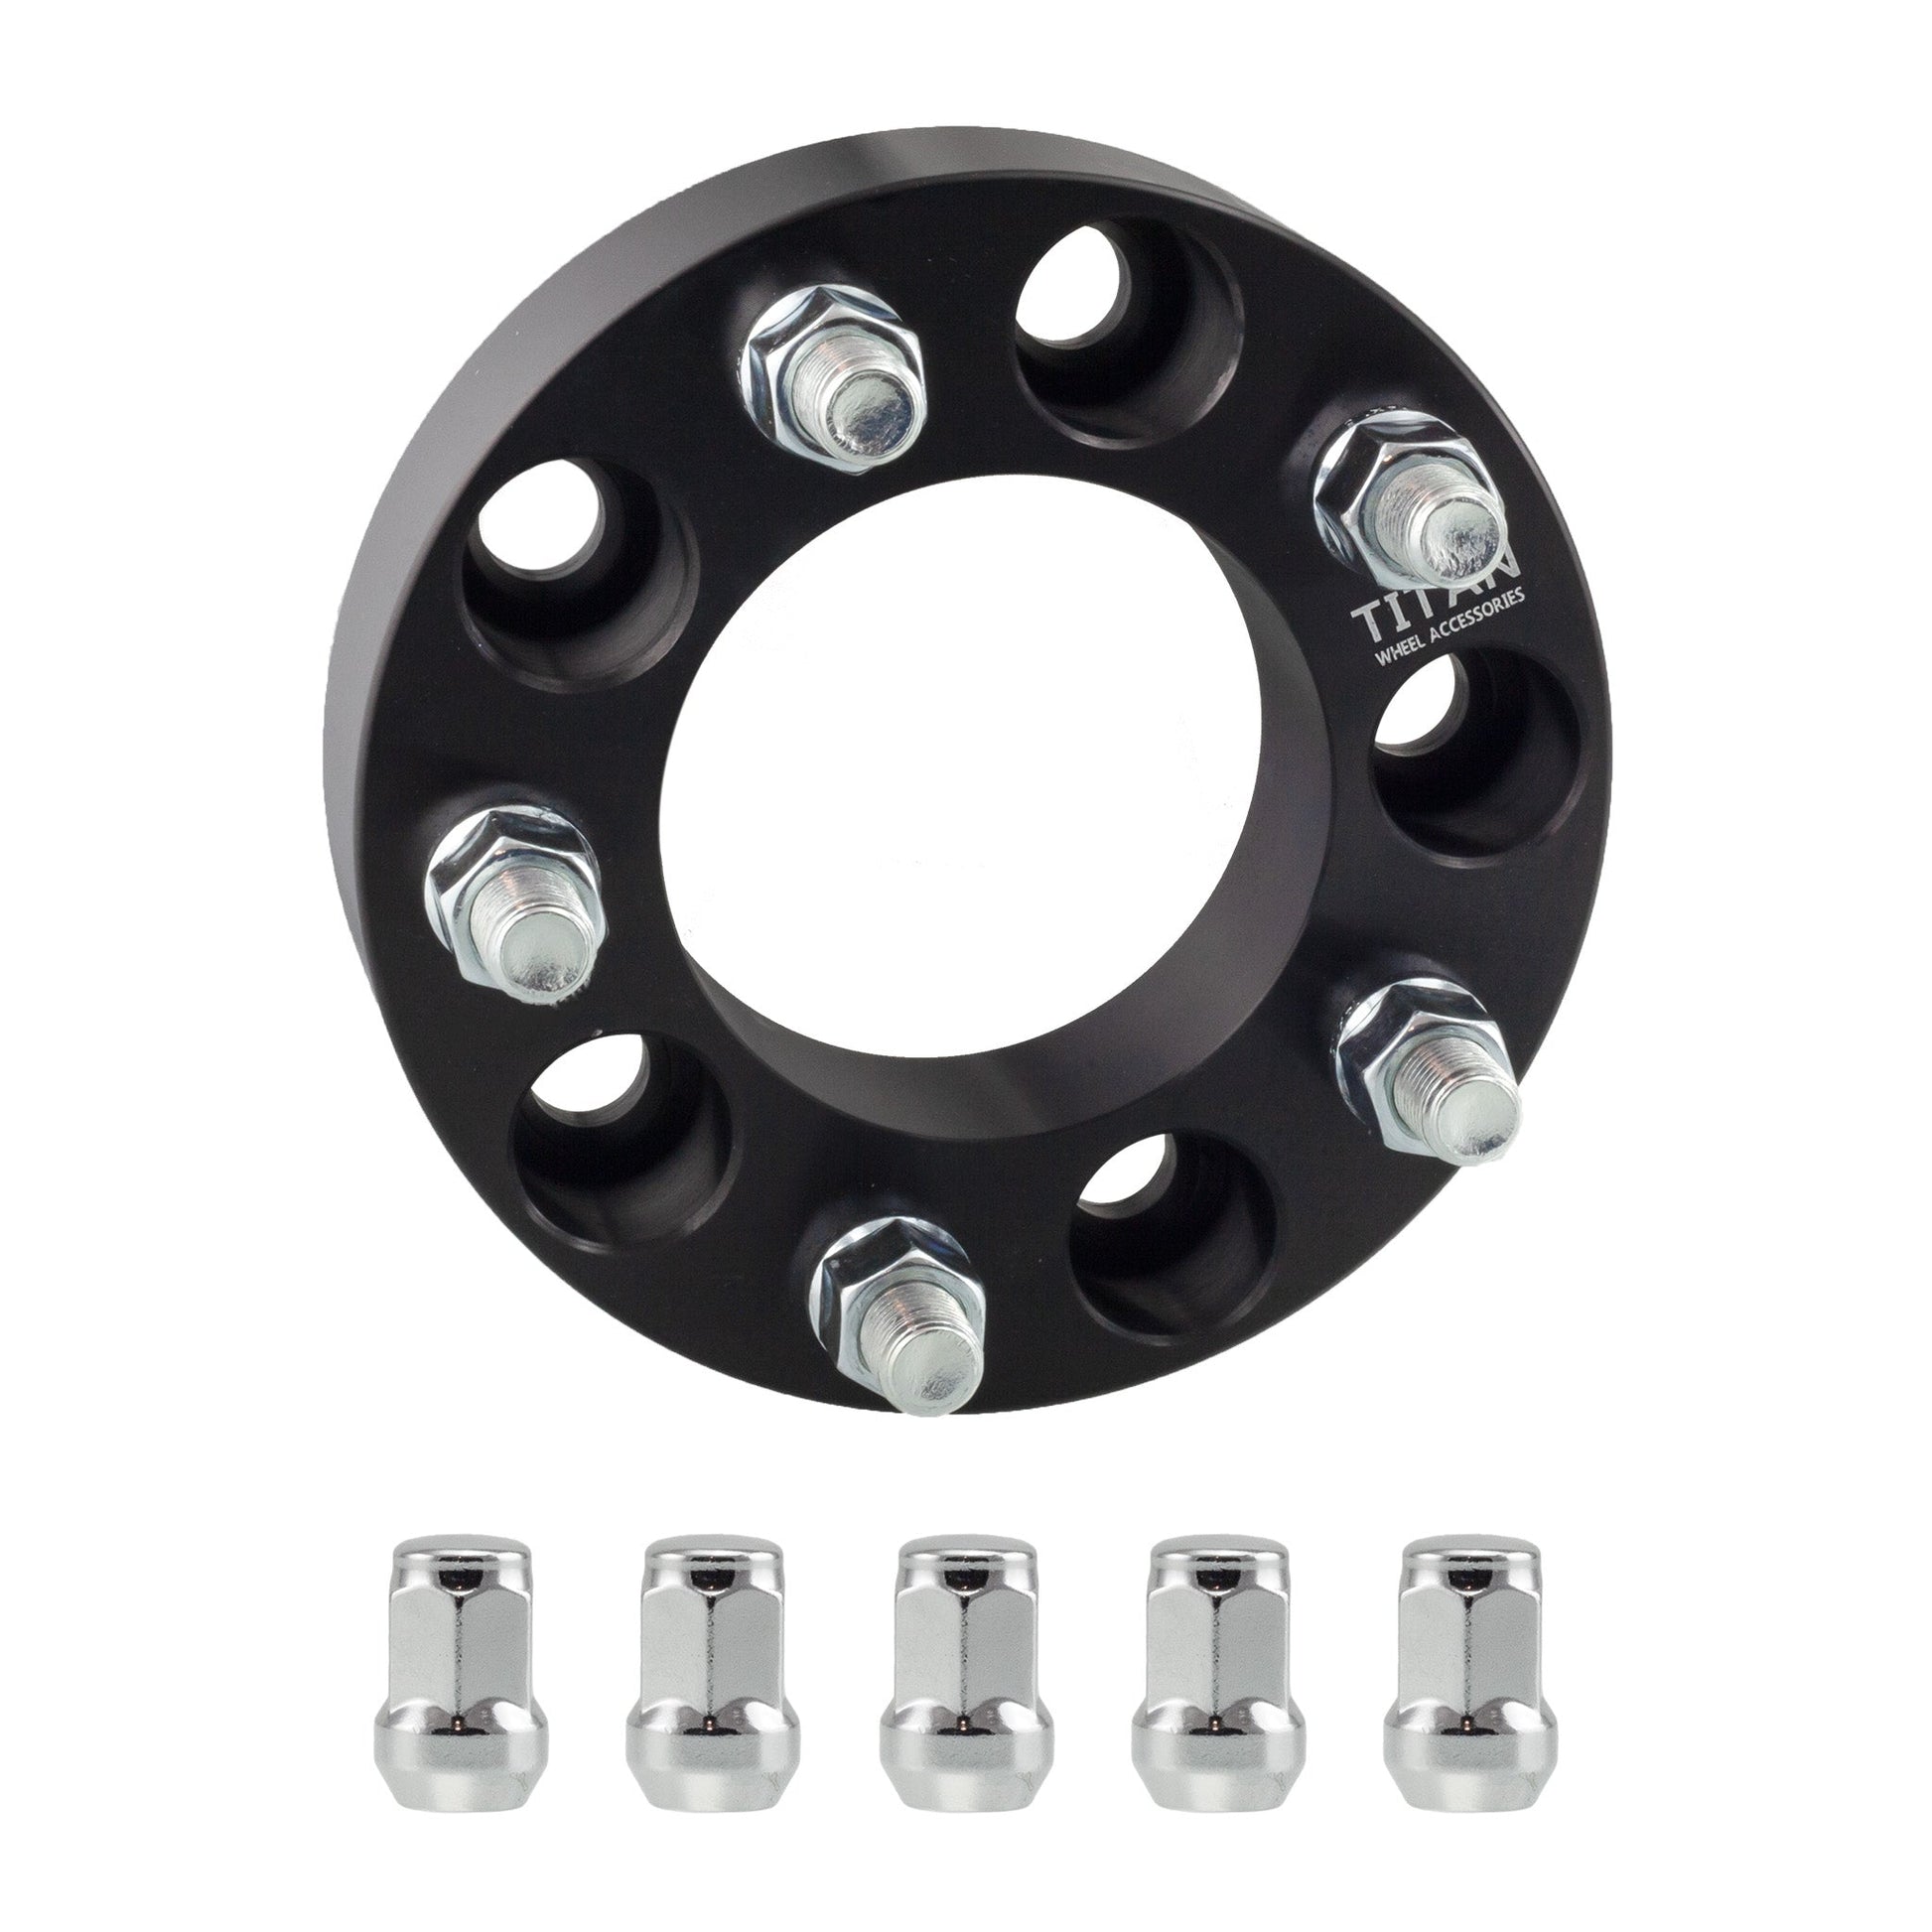 1.25" (32mm) Titan Wheel Spacers for Jeep Wrangler TJ YJ XJ KJ | 5x4.5 (5x114.3) | 1/2x20 Studs | Titan Wheel Accessories